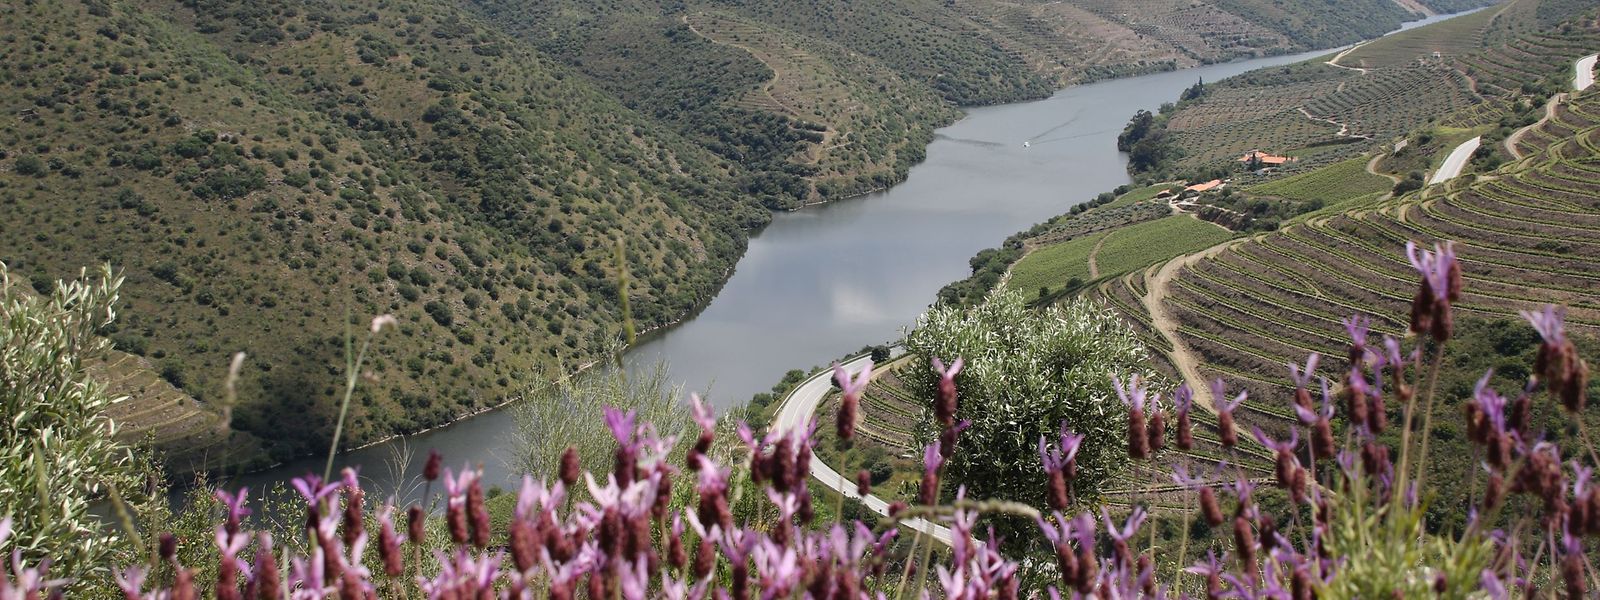 Ein Ausblick, der zum Träumen und Entdecken einlädt: die Mündung des Côa ins Douro-Tal.